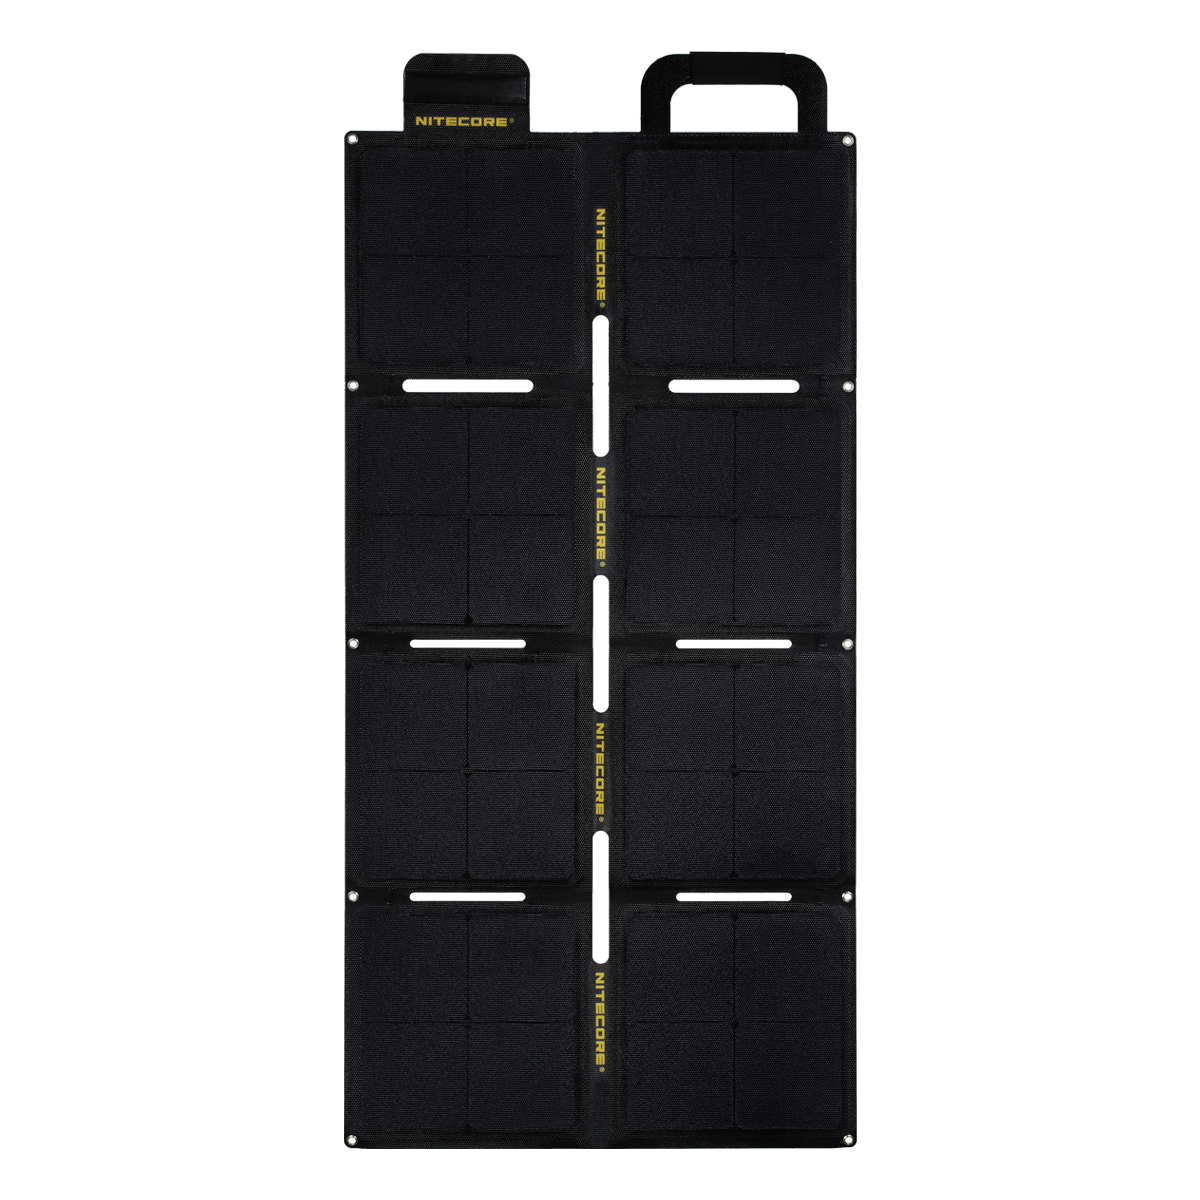 Összecsukható 100W ETFE napelem NITECORE FSP100W IPX5 vízállósággal, 5,6A és 18V kimenettel napelemes eszközök számára kempingezéshez és utazáshoz.